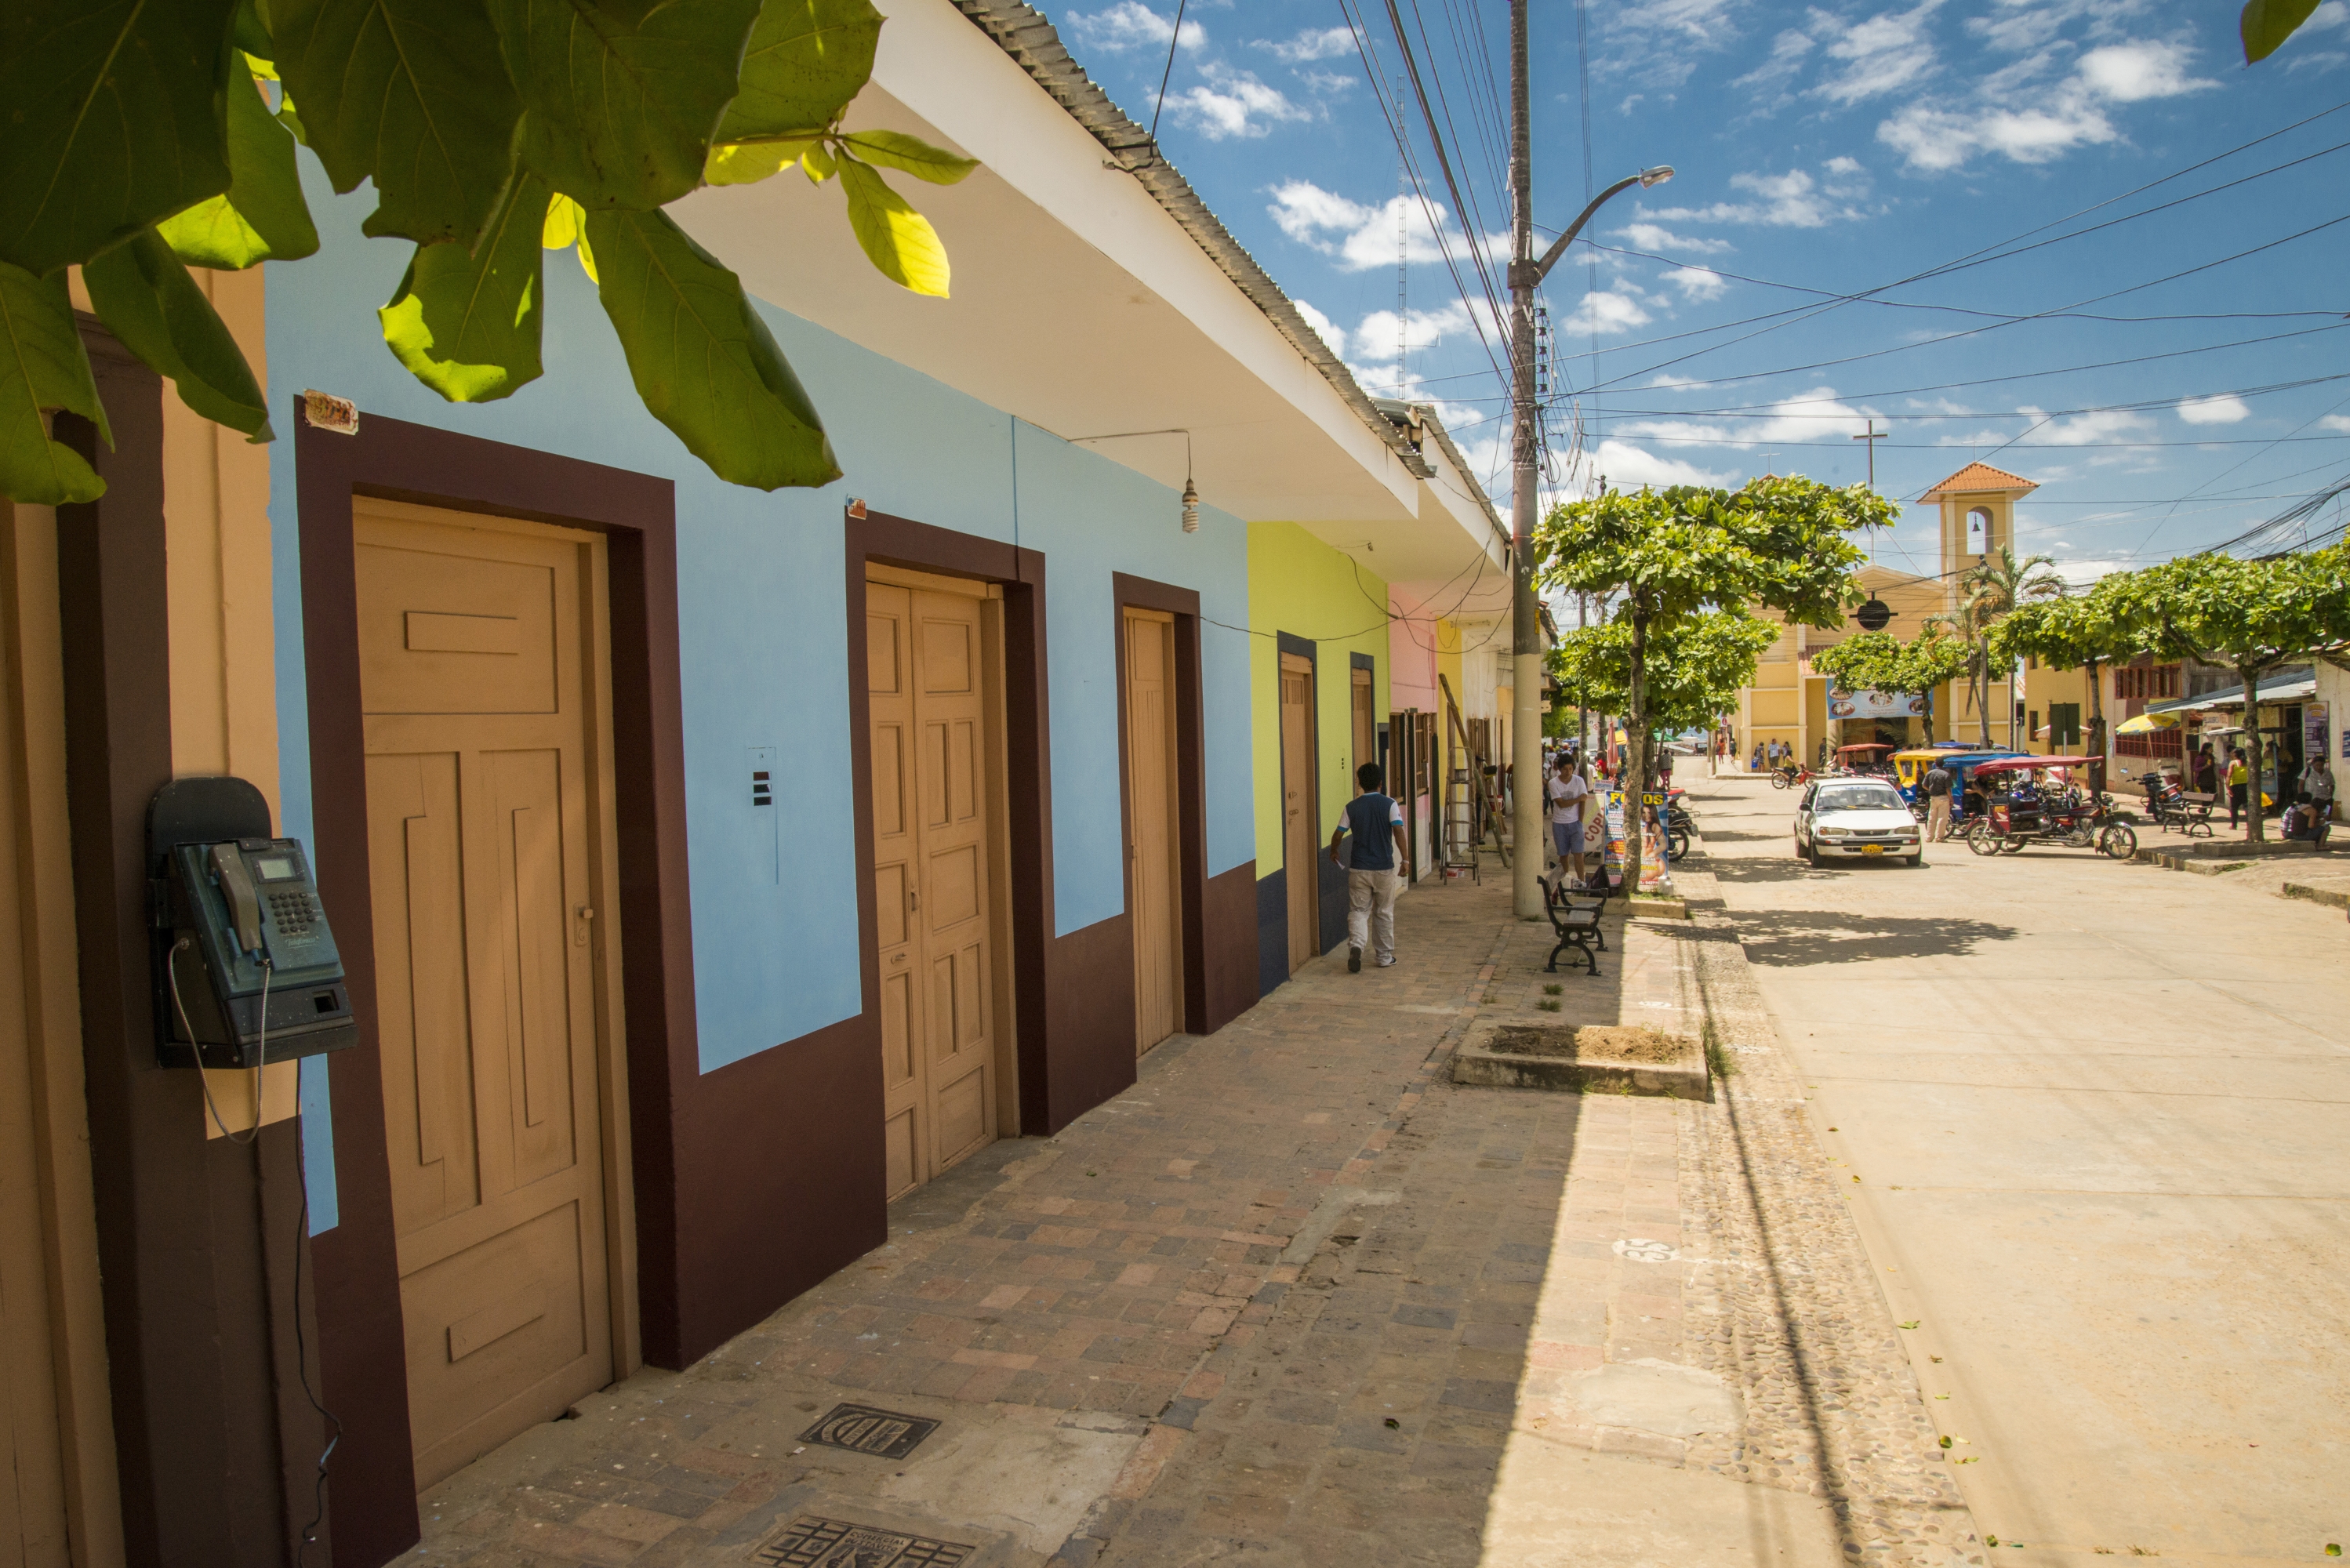 Las calles de Lamas se caracterizan por ser coloridas. (Foto: PromPerú)